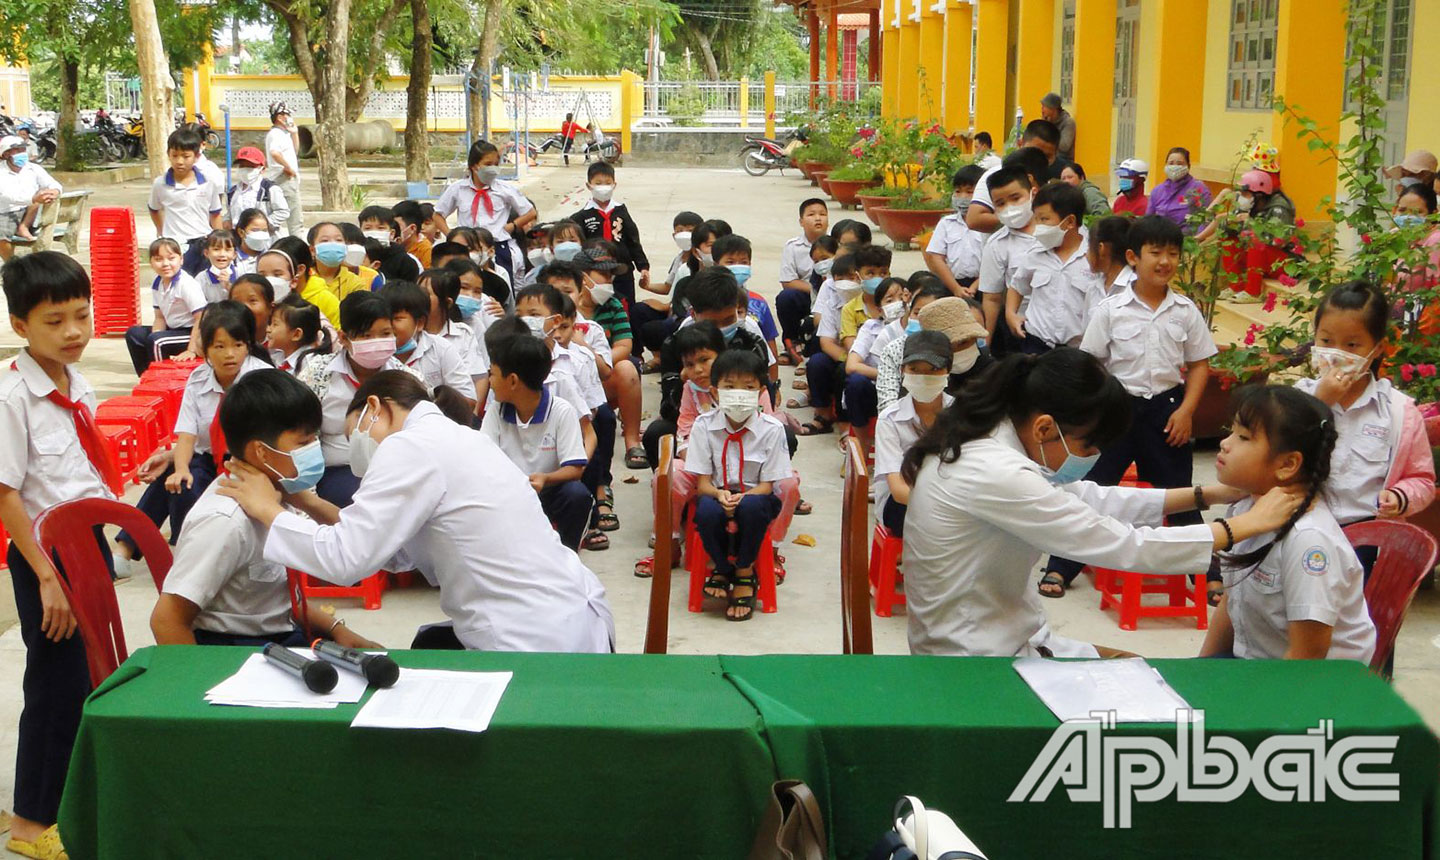 Bác sĩ  khám tầm soát bệnh lý tuyến giáp cho học sinh tại Trường Tiểu học Mỹ Thành Bắc, huyện Cai Lậy.                                                                      Ảnh: THANH HOÀNG